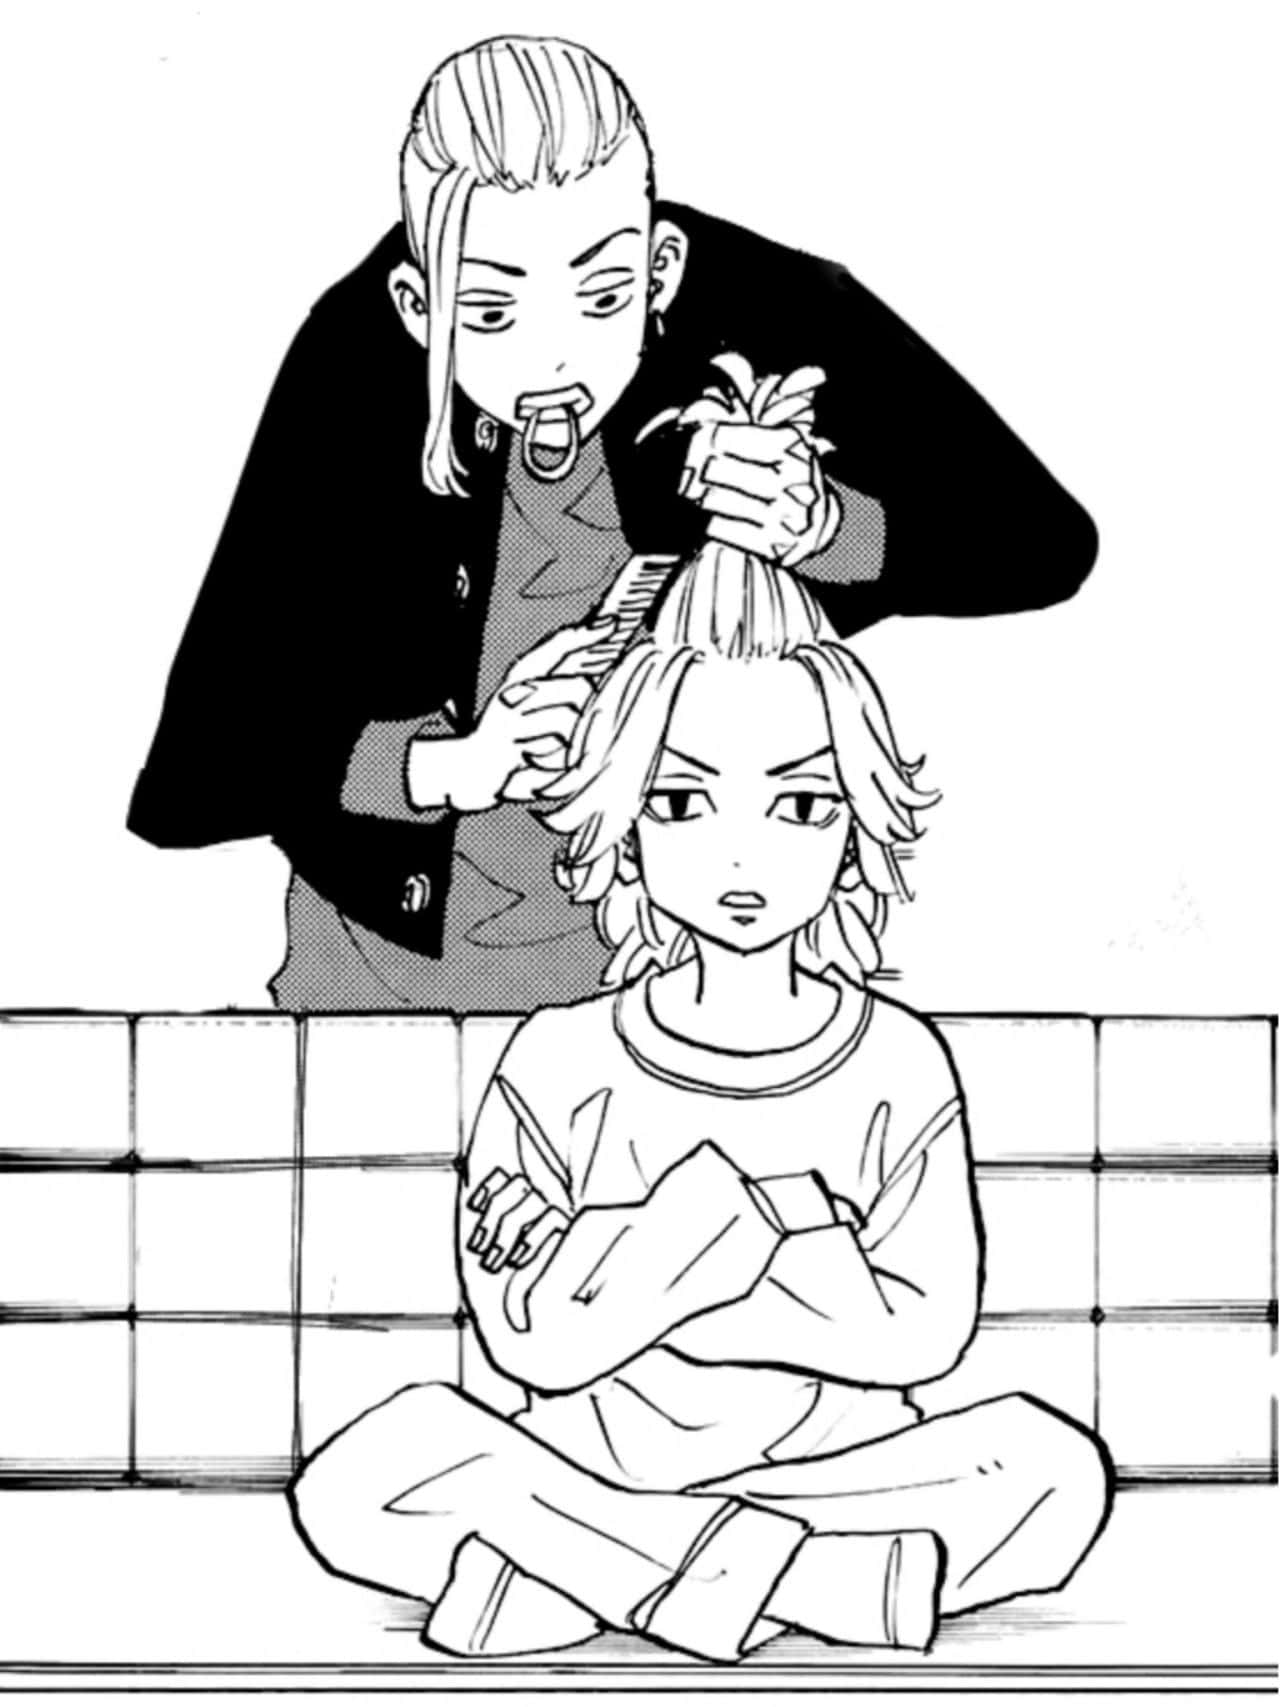 Draken Cutting Manjiro Sano's Hair Wallpaper